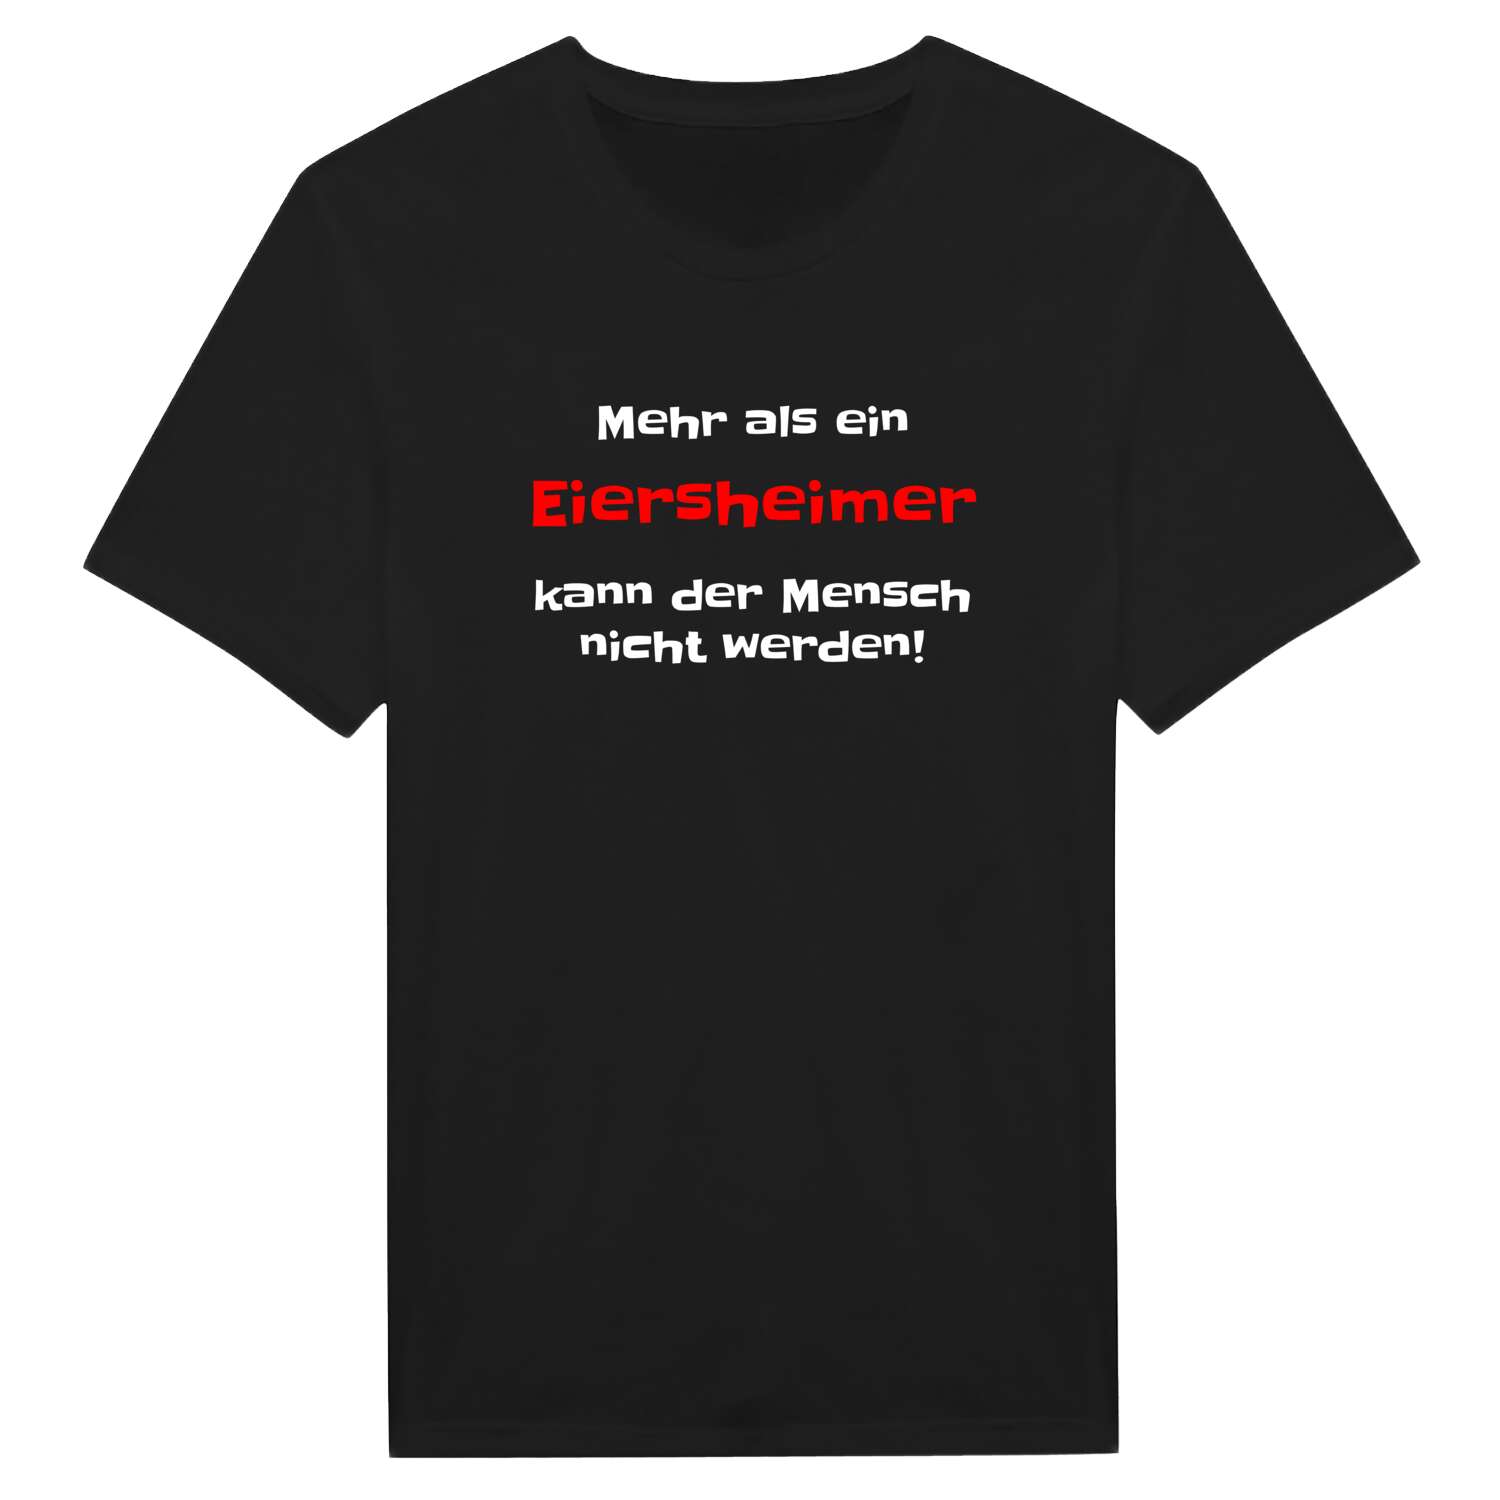 Eiersheim T-Shirt »Mehr als ein«